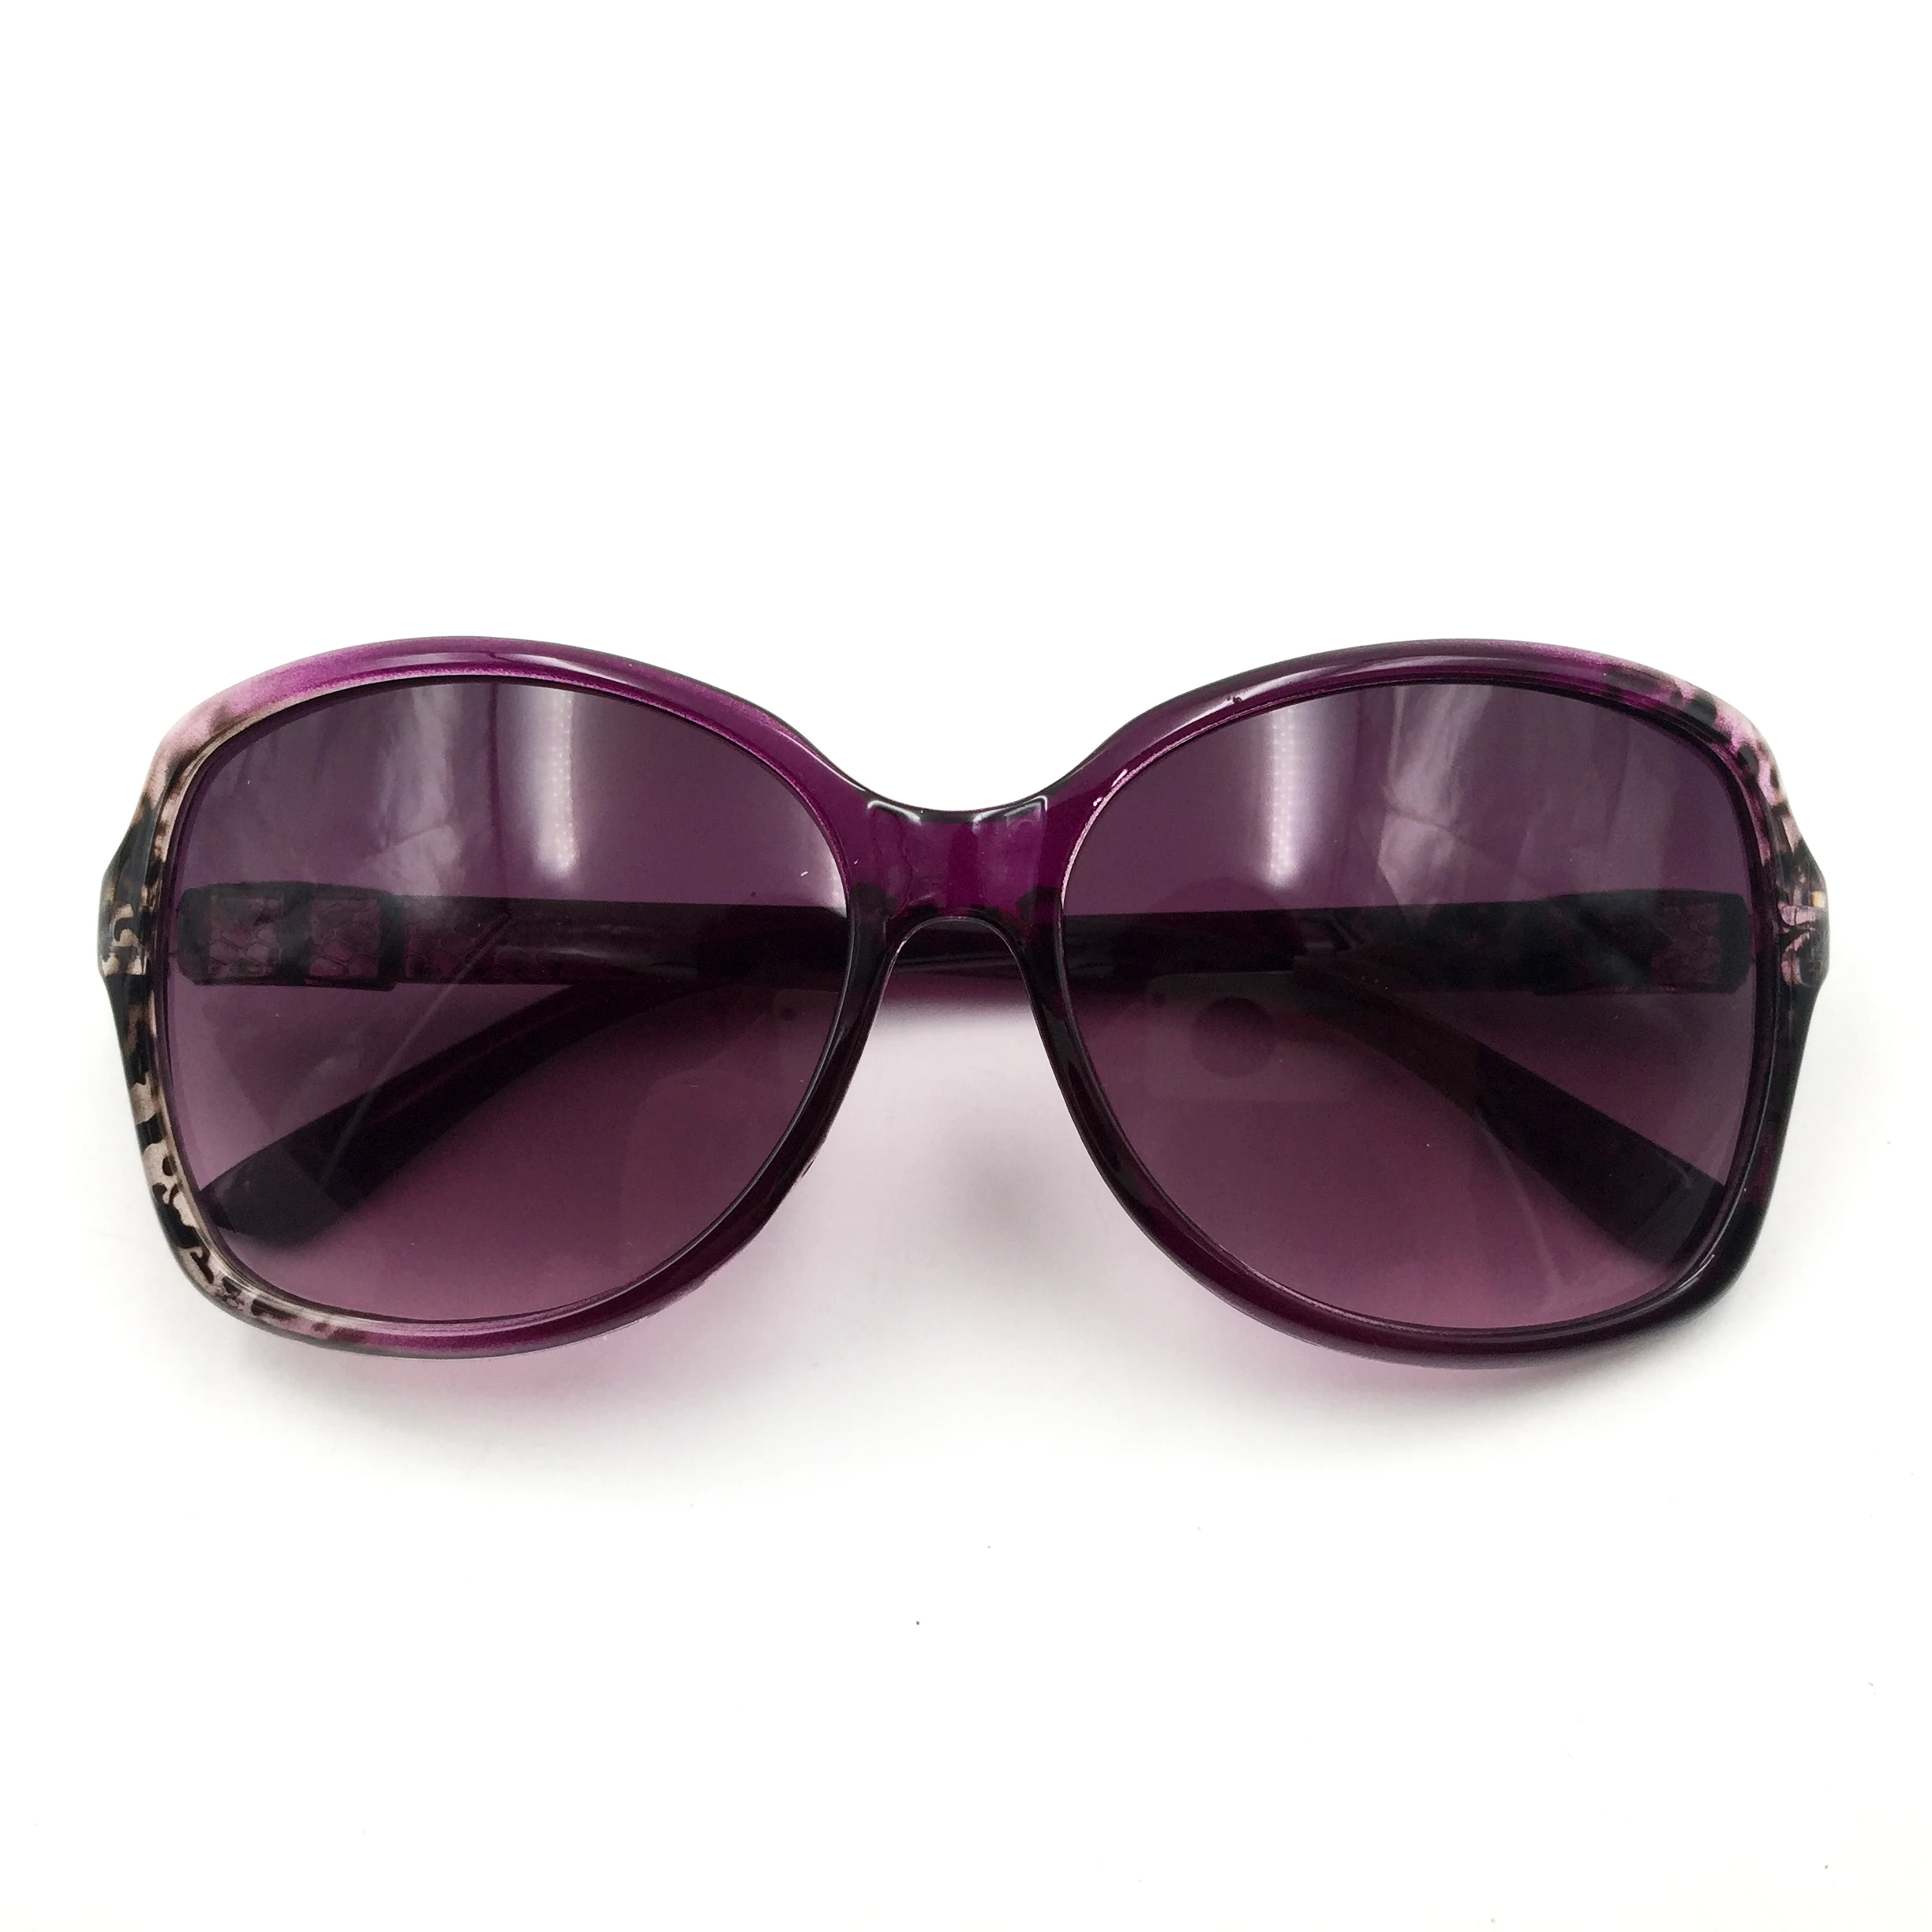 FOENIXSONG, новые солнцезащитные очки для мужчин, брендовые, унисекс, Ретро стиль, Oculos de sol, женские солнцезащитные очки, винтажные очки, черная оправа